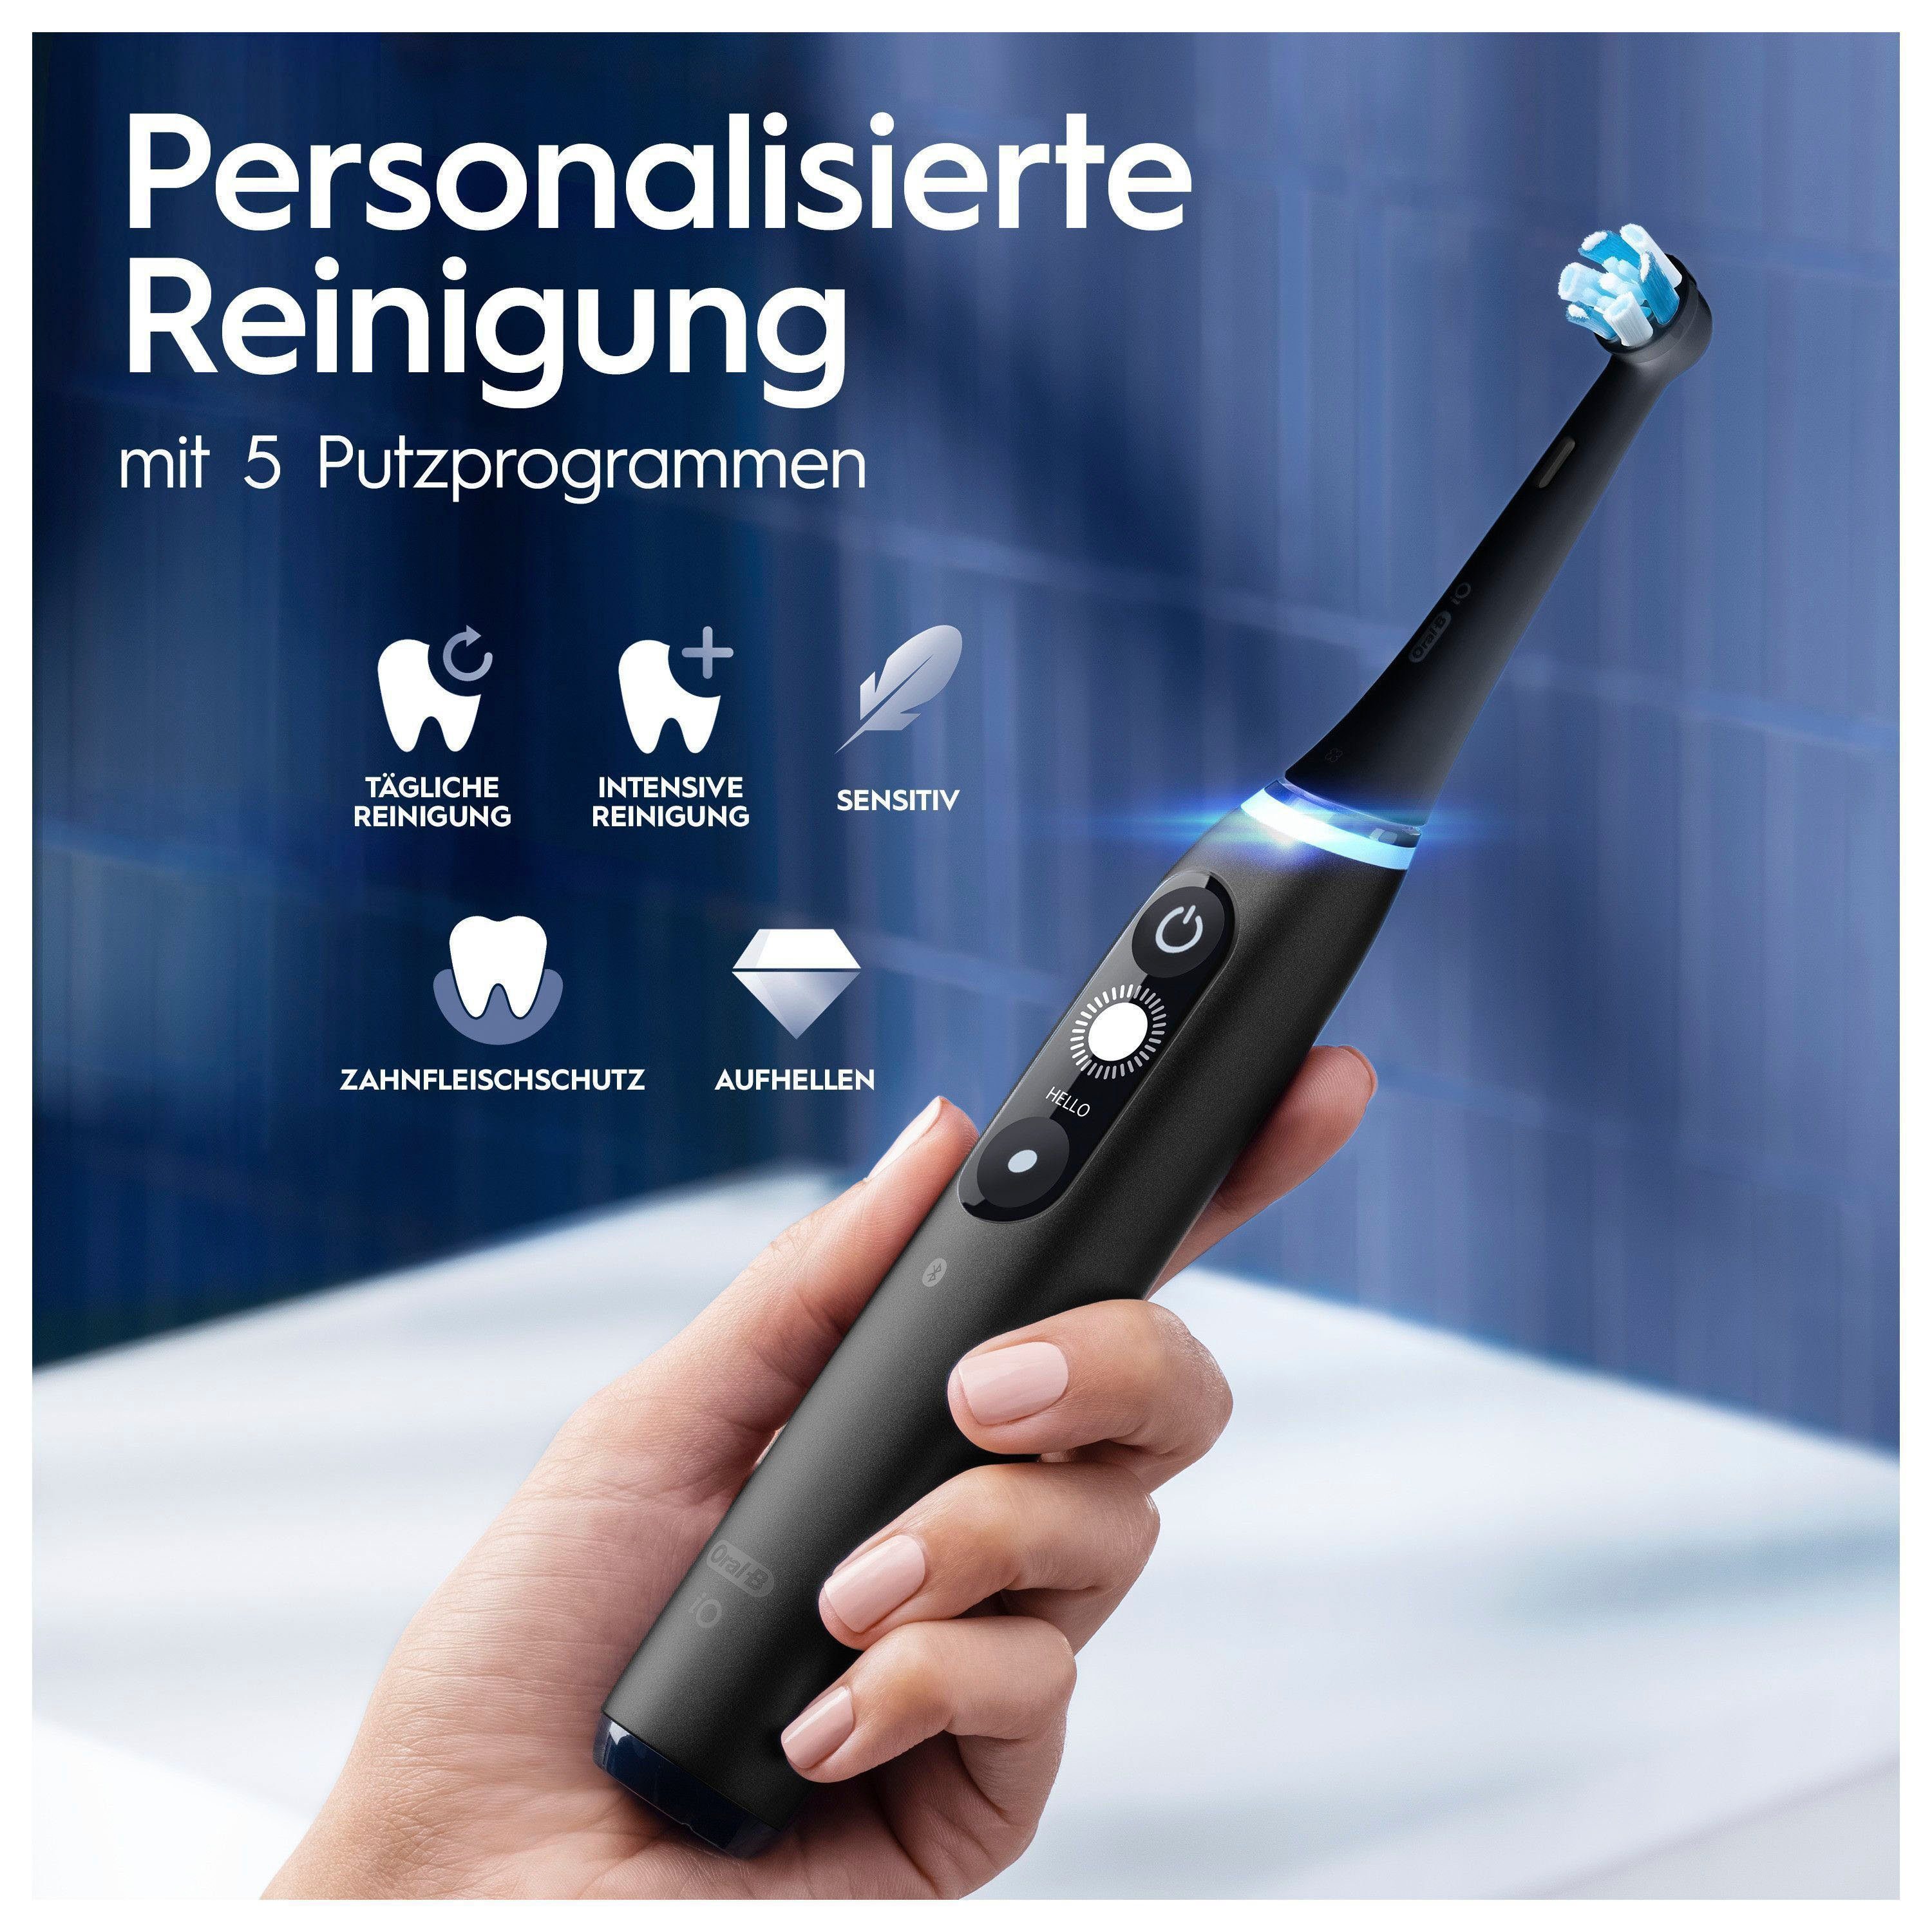 Oral-B Elektrische Zahnbürste Aufsteckbürsten: Display, Putzmodi, Black Onyx 5 iO Magnet-Technologie, Reiseetui 2 St., mit 7